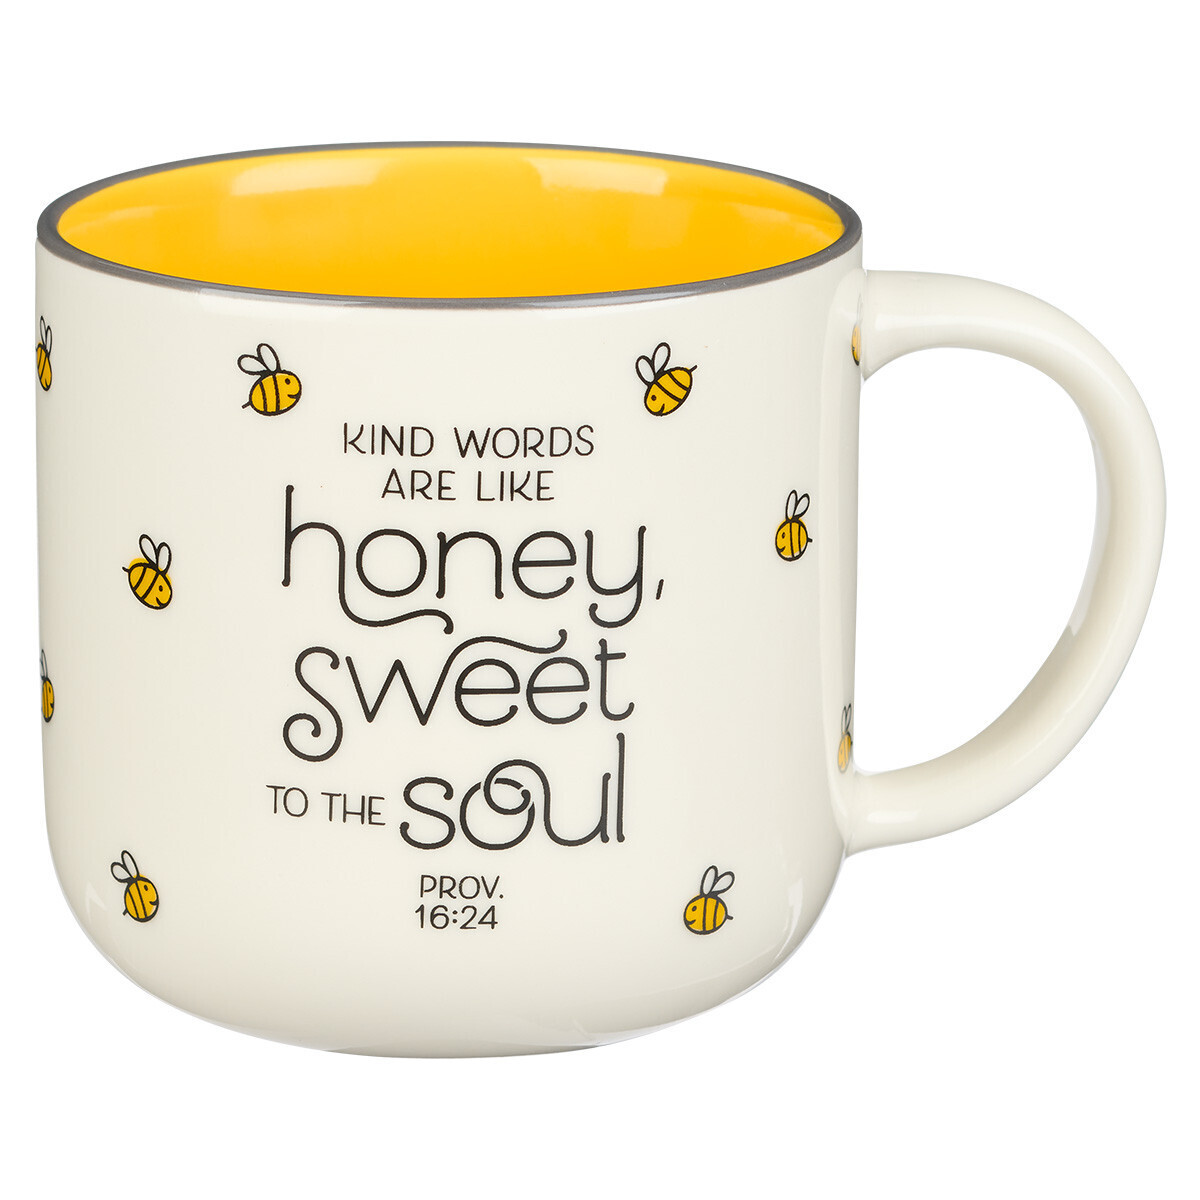 Honey Bee White and Yellow Ceramic Mug